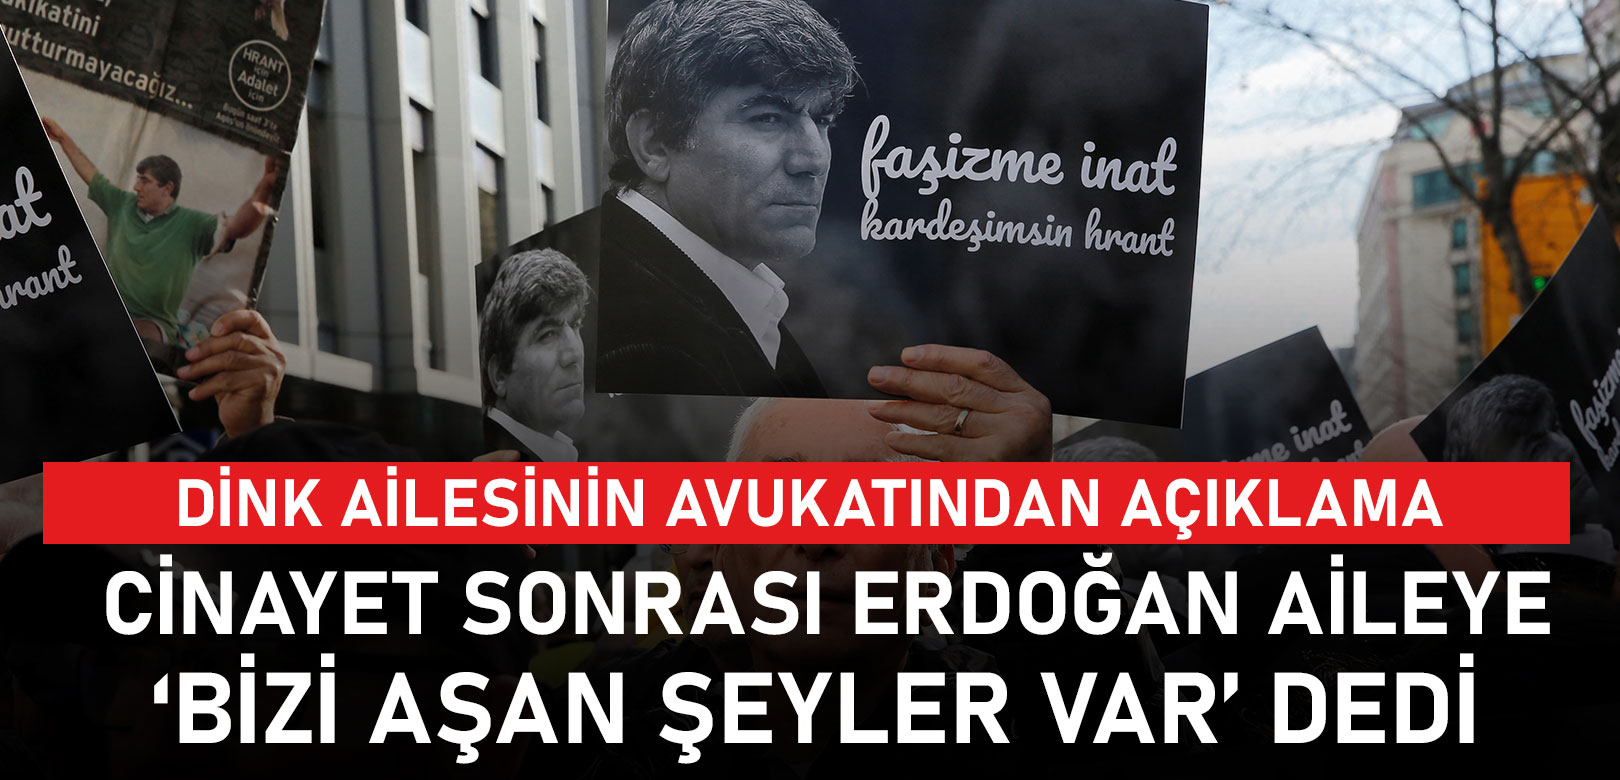 'Cinayet sonrası Erdoğan, Hrant Dink'in ailesine 'Bizi aşan şeyler var' dedi'